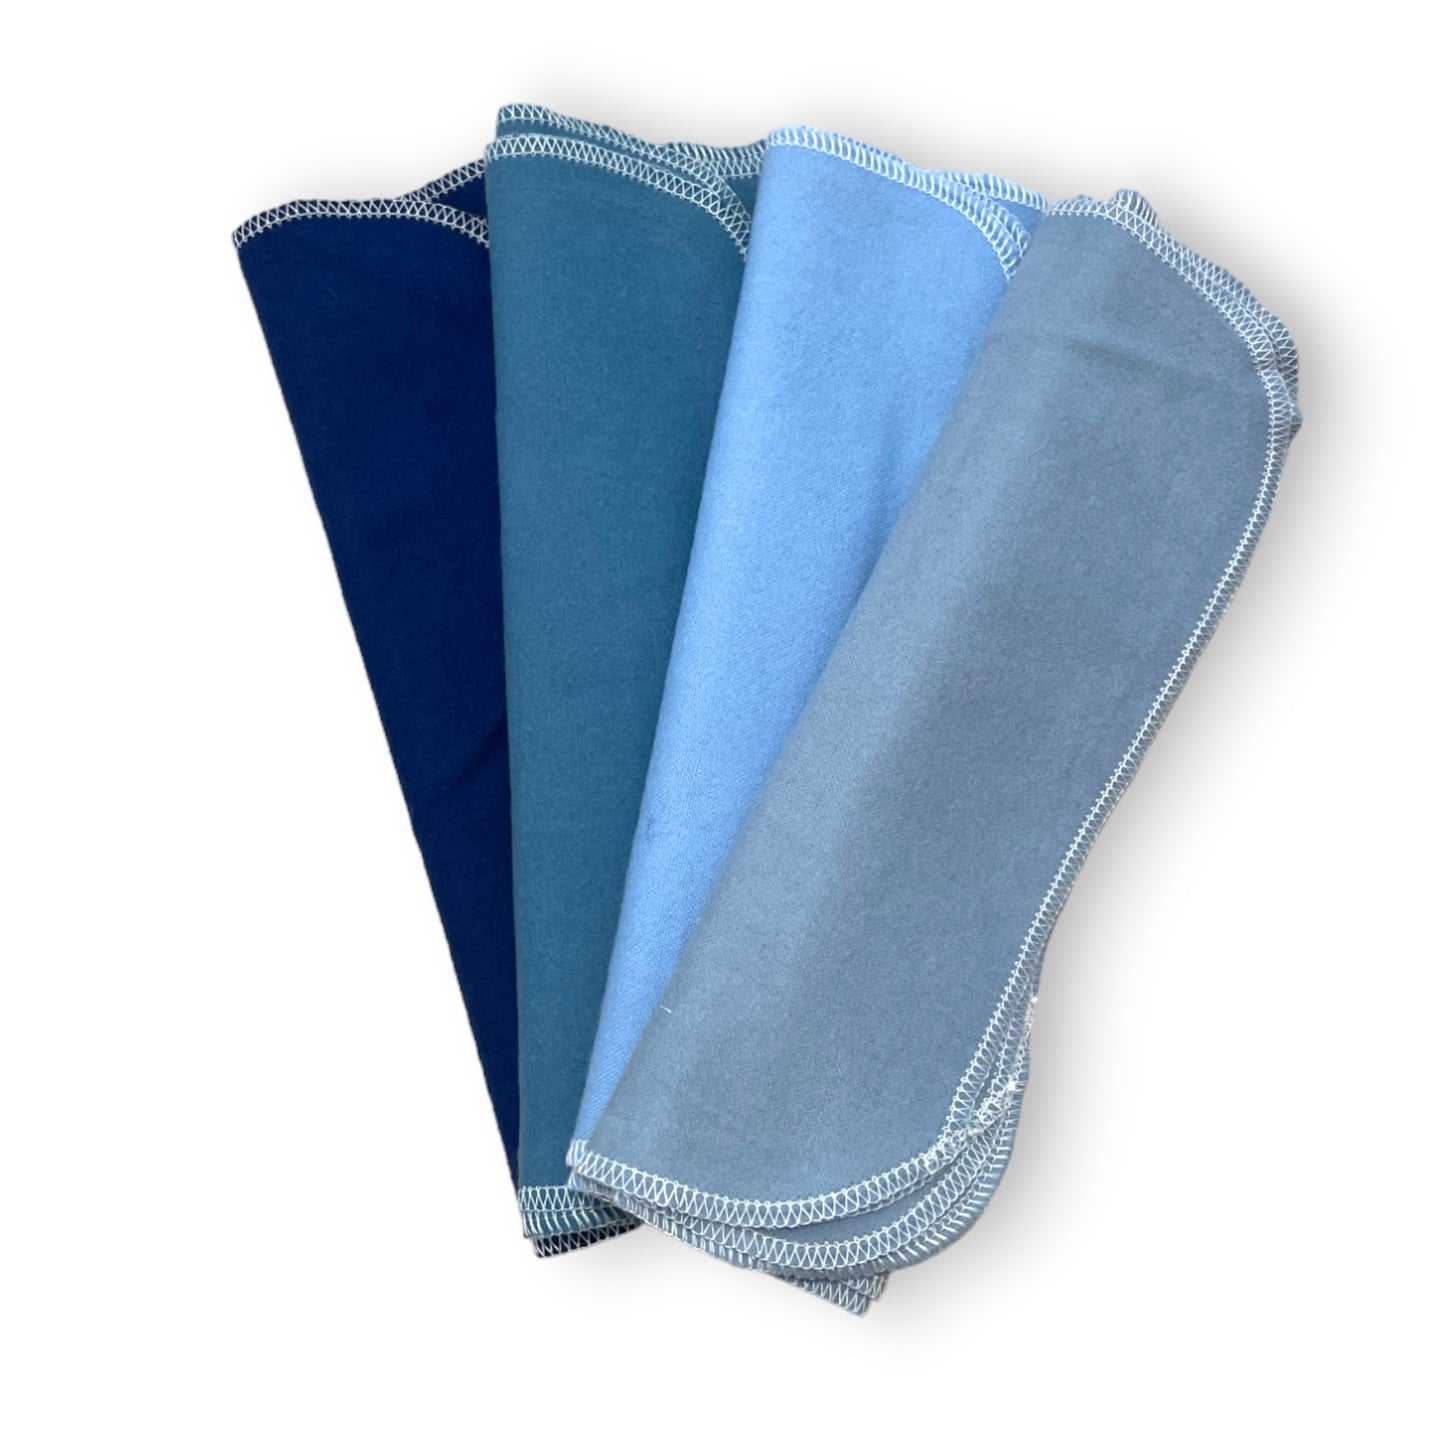 Eco-Towels | Paper Towel Alternative | 12pk